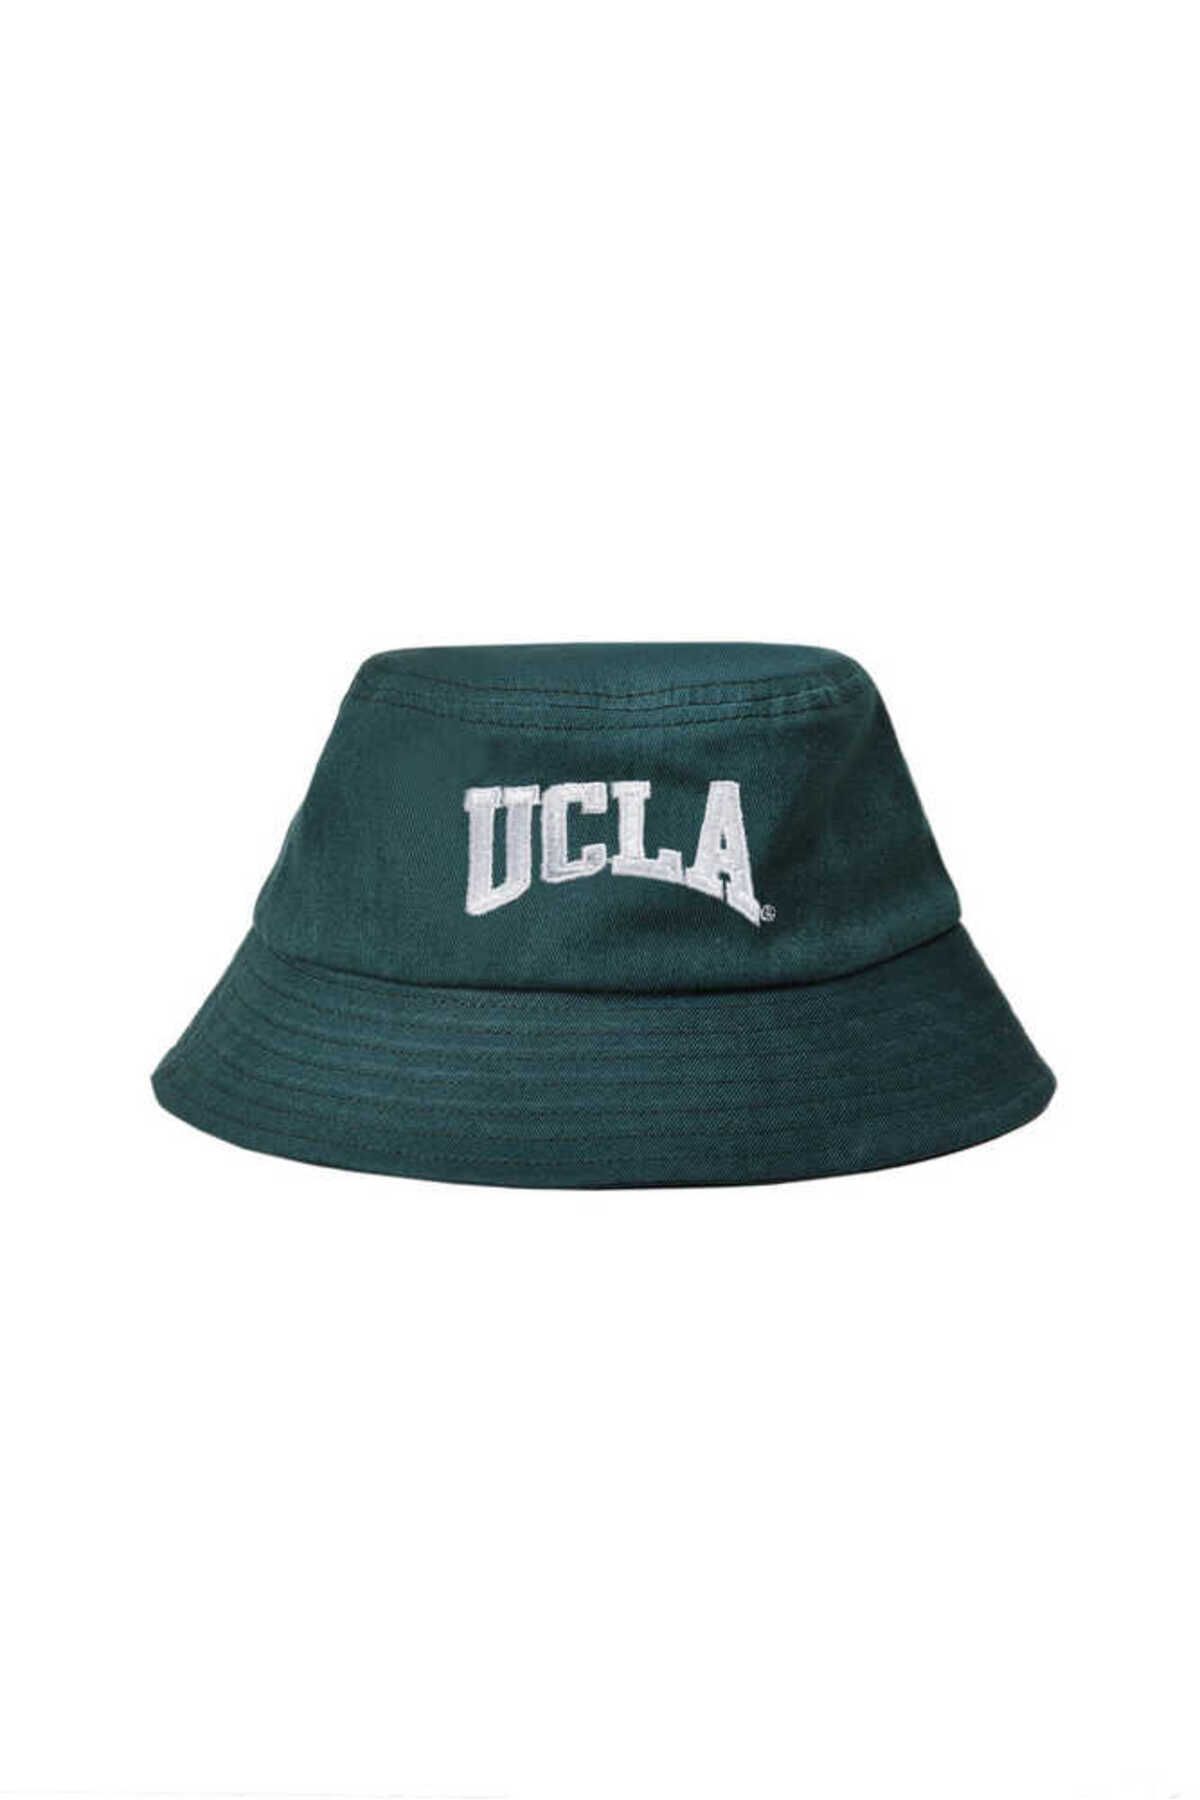 Ucla Carson Yeşil Bucket Cap Nakışlı Unisex Şapka